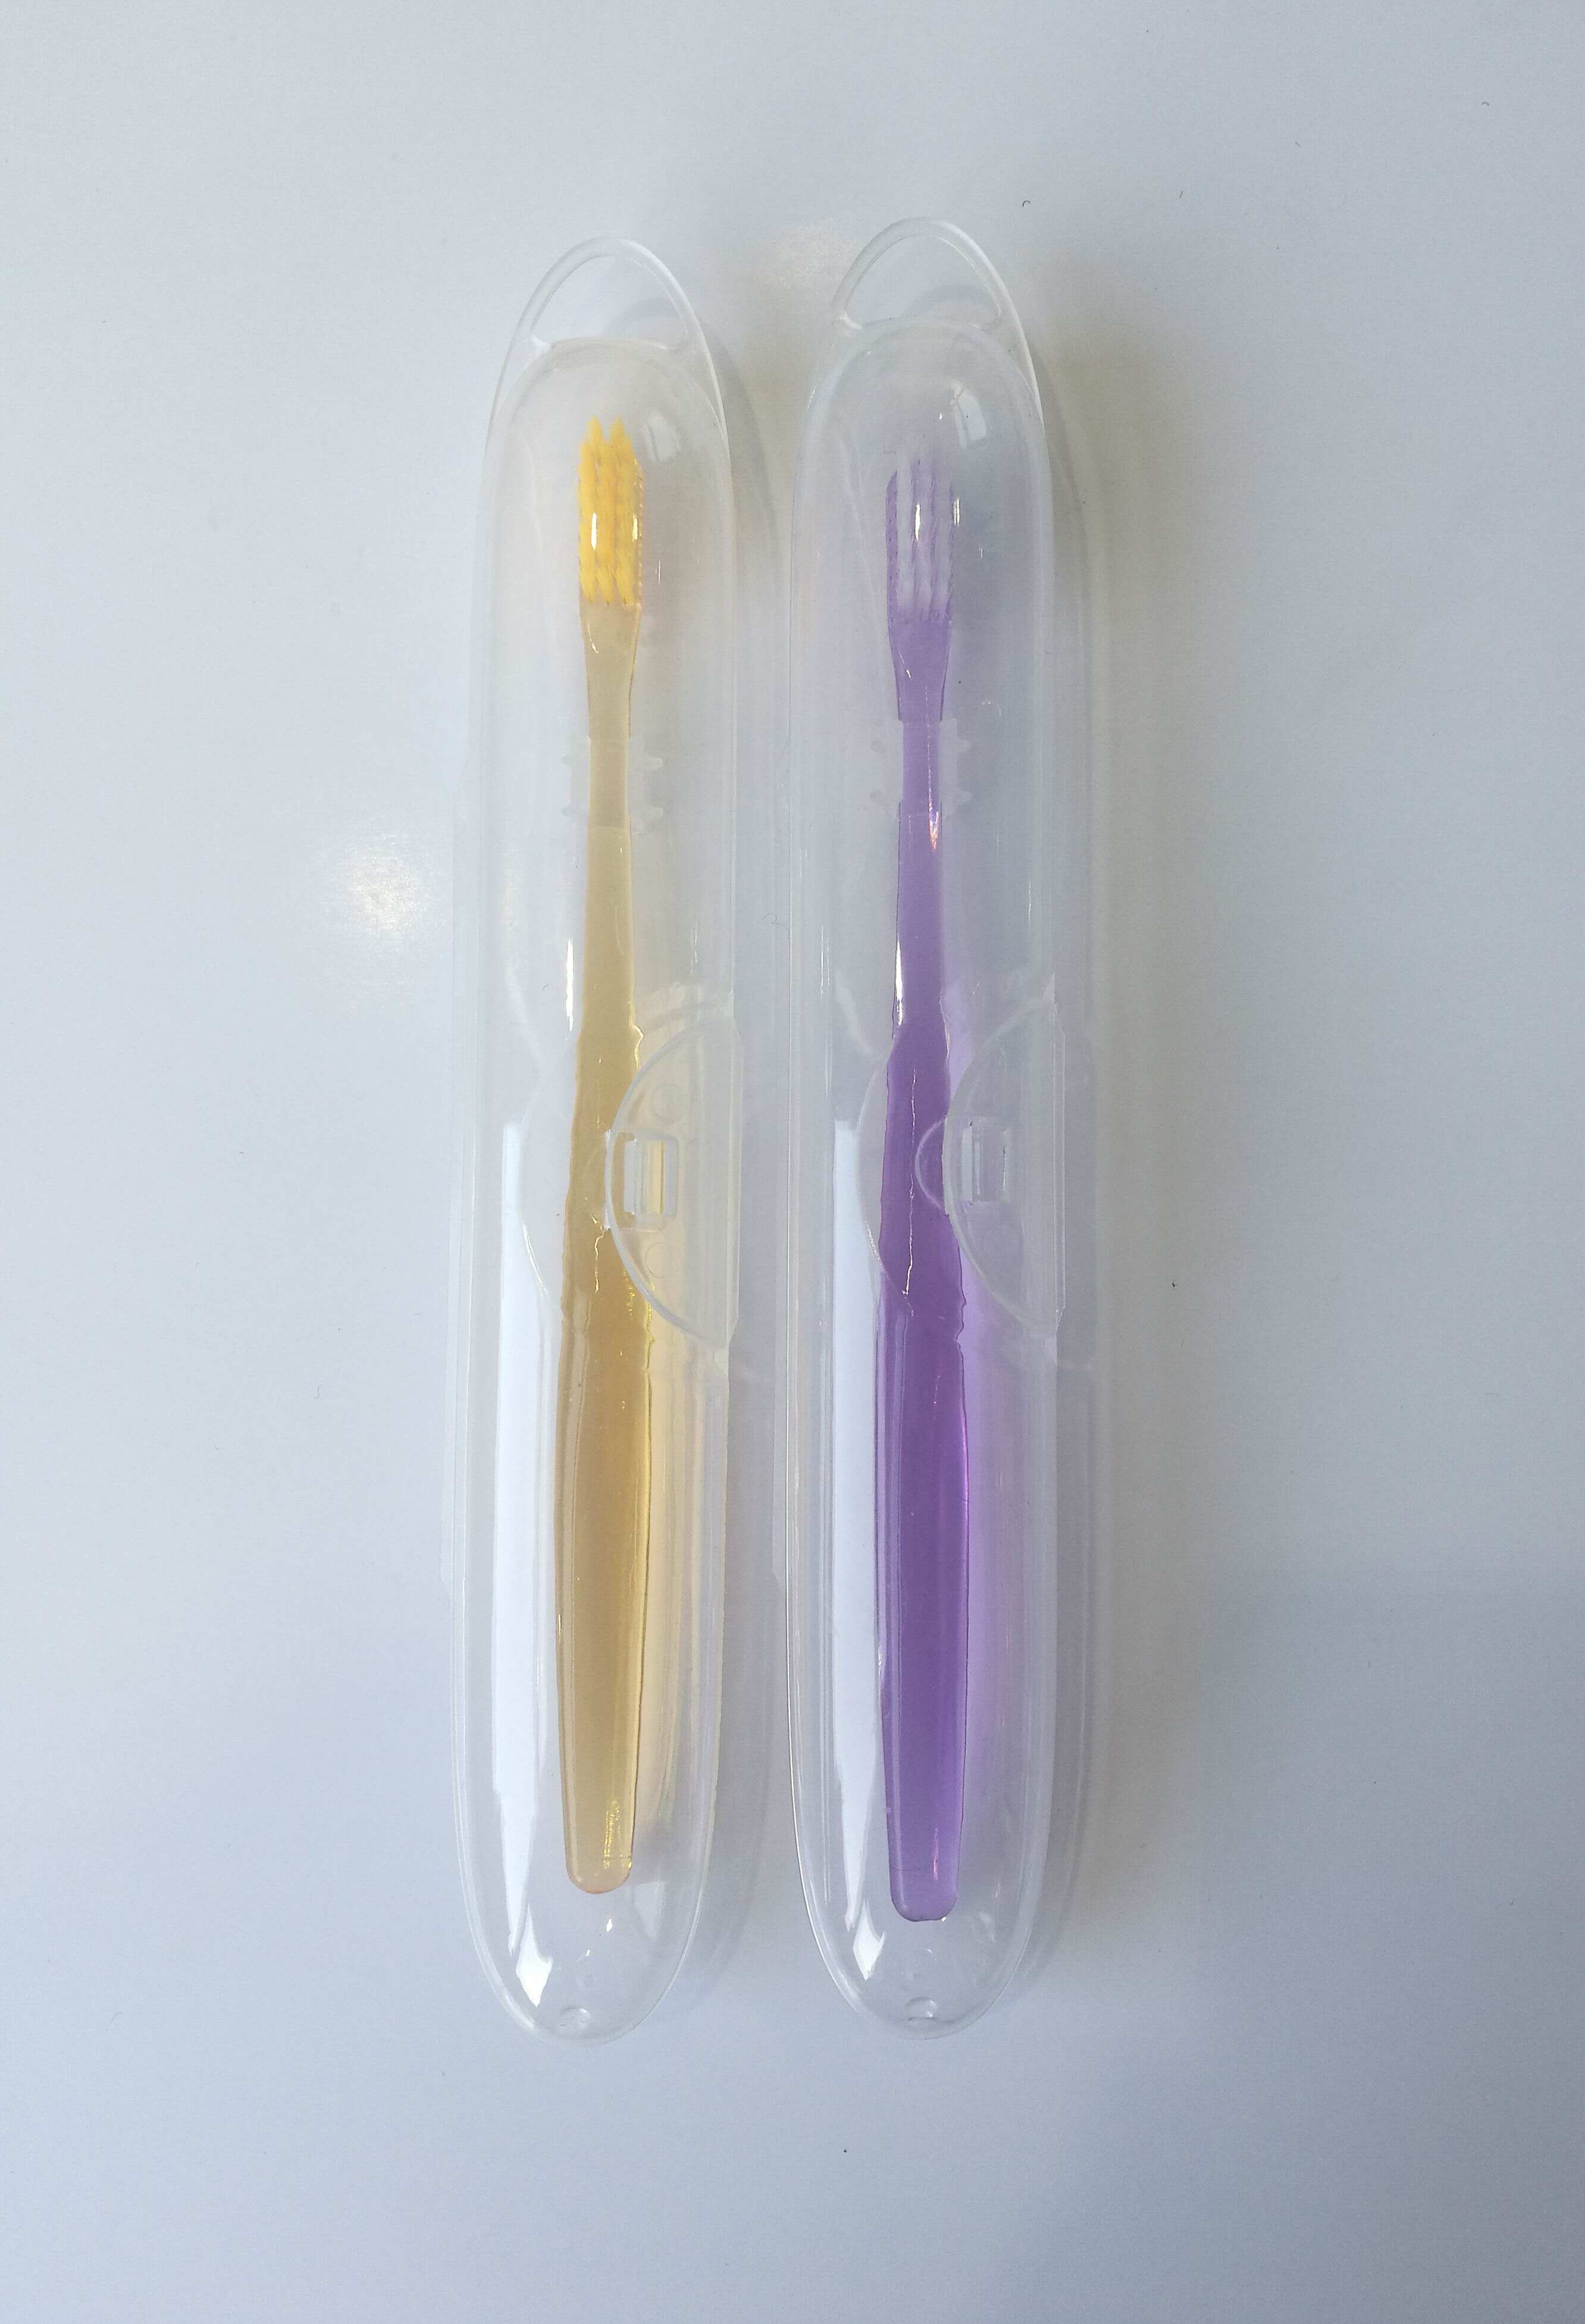 יאנגזו הגעה חדשה פלסטיק מתקן משחת שיניים 2 כוס מגנטי קיר הר מפעל מחזיק מברשת שיניים